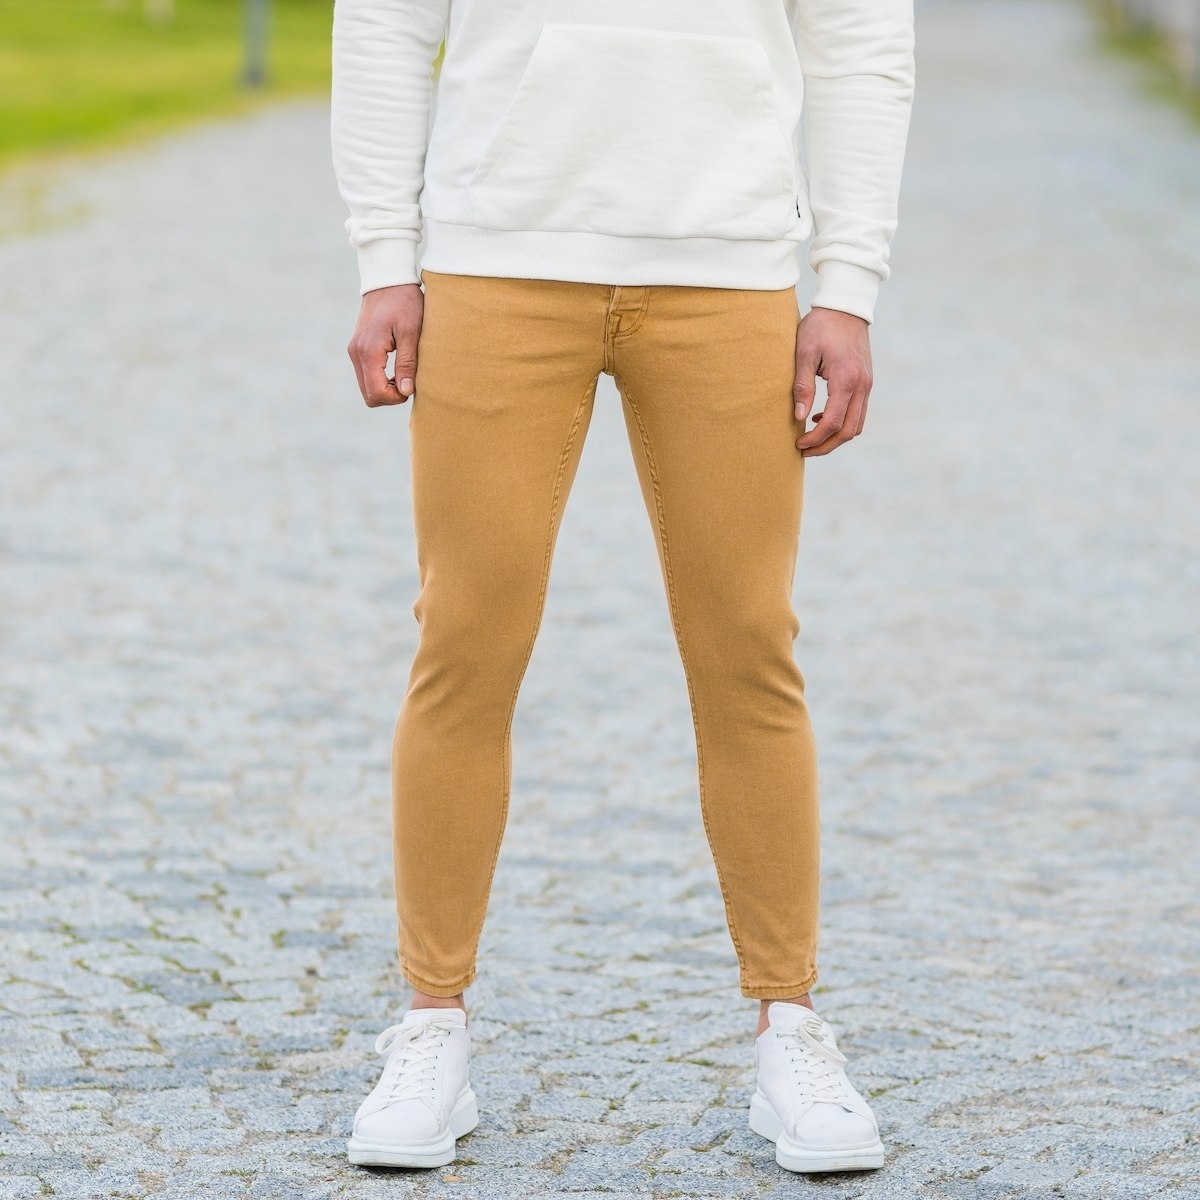 Men's Basic Skinny Jeans In Mustard - 1